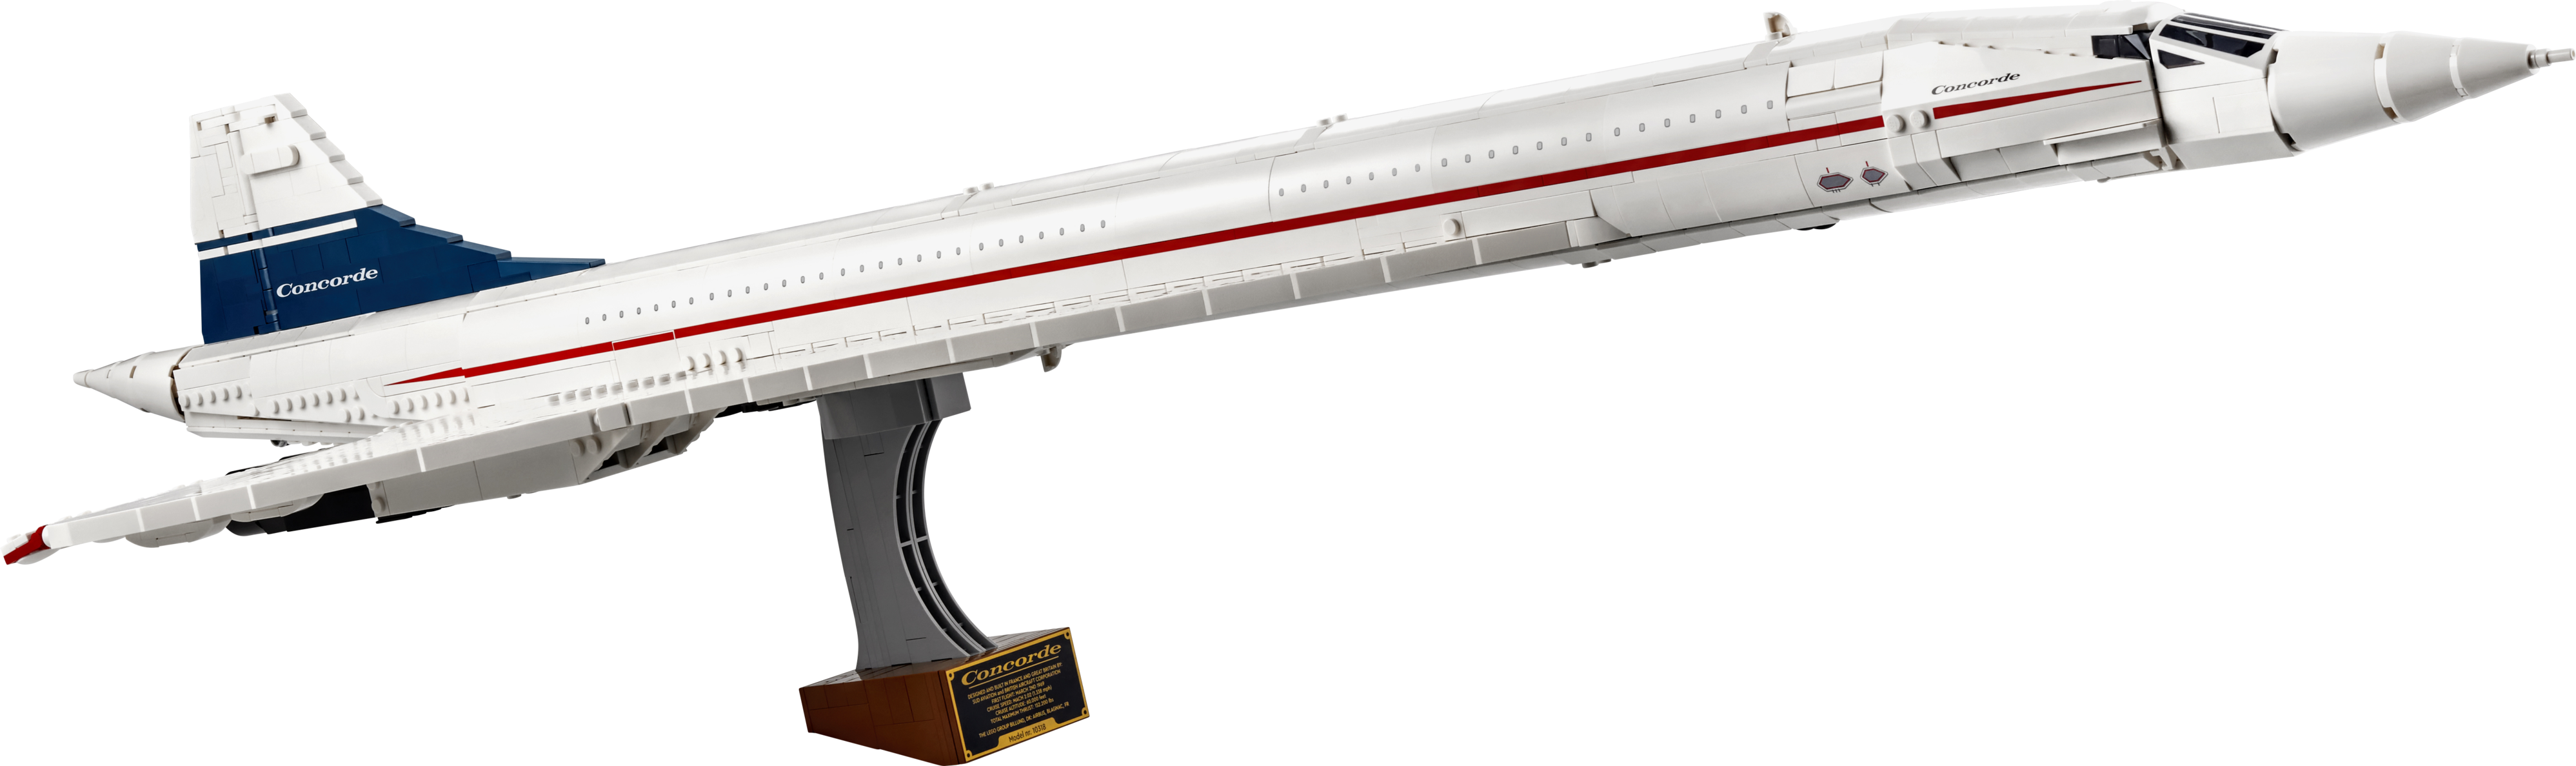 Concorde på tilbud til 1549,95 kr. hos Lego